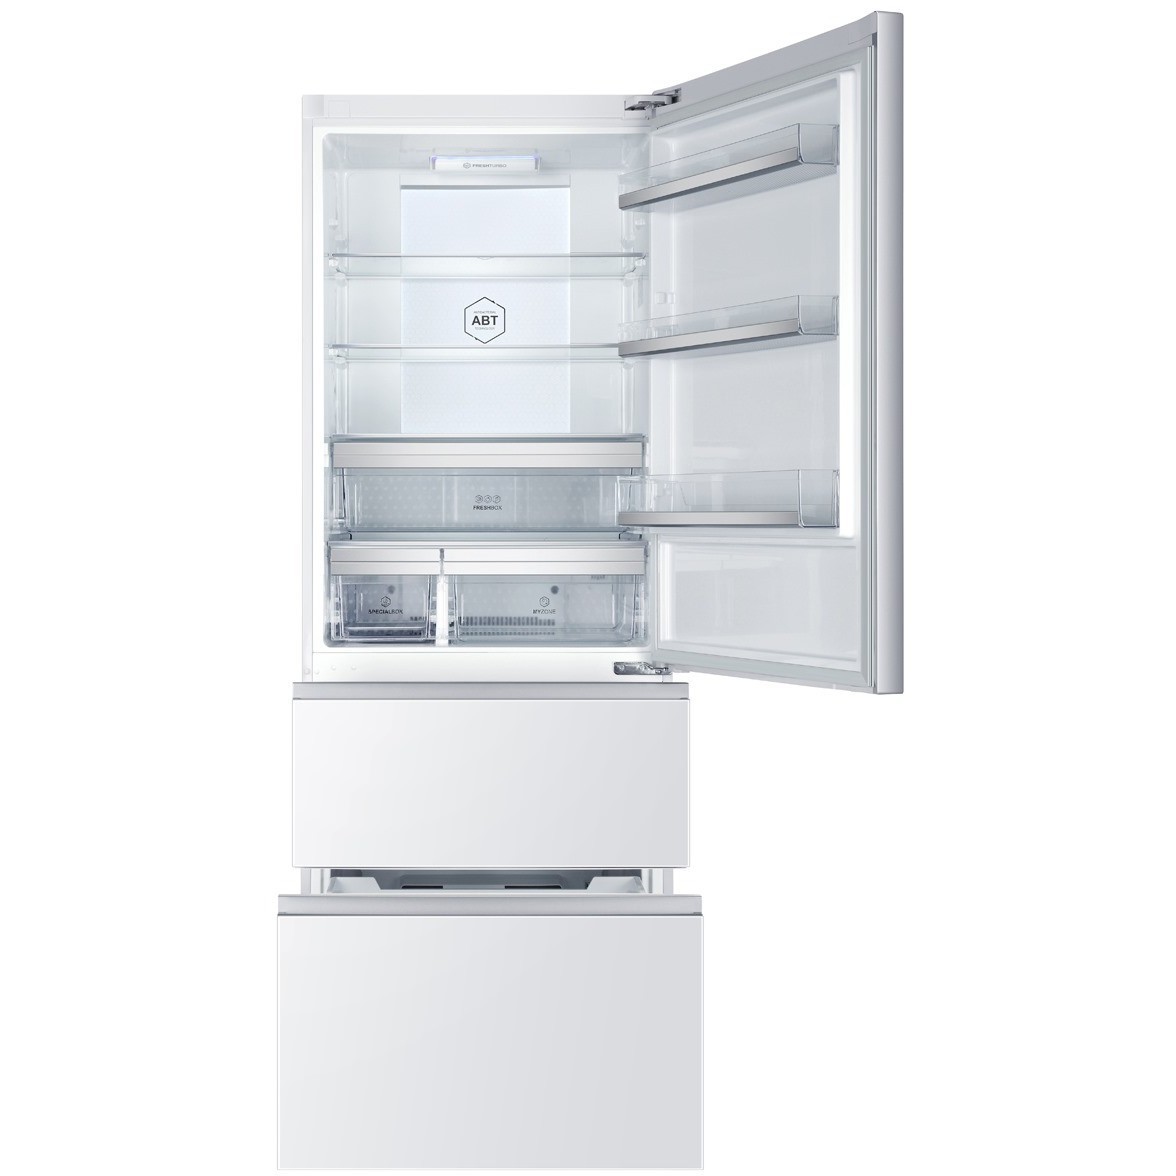 Холодильник Haier A3FE-742CGWJ